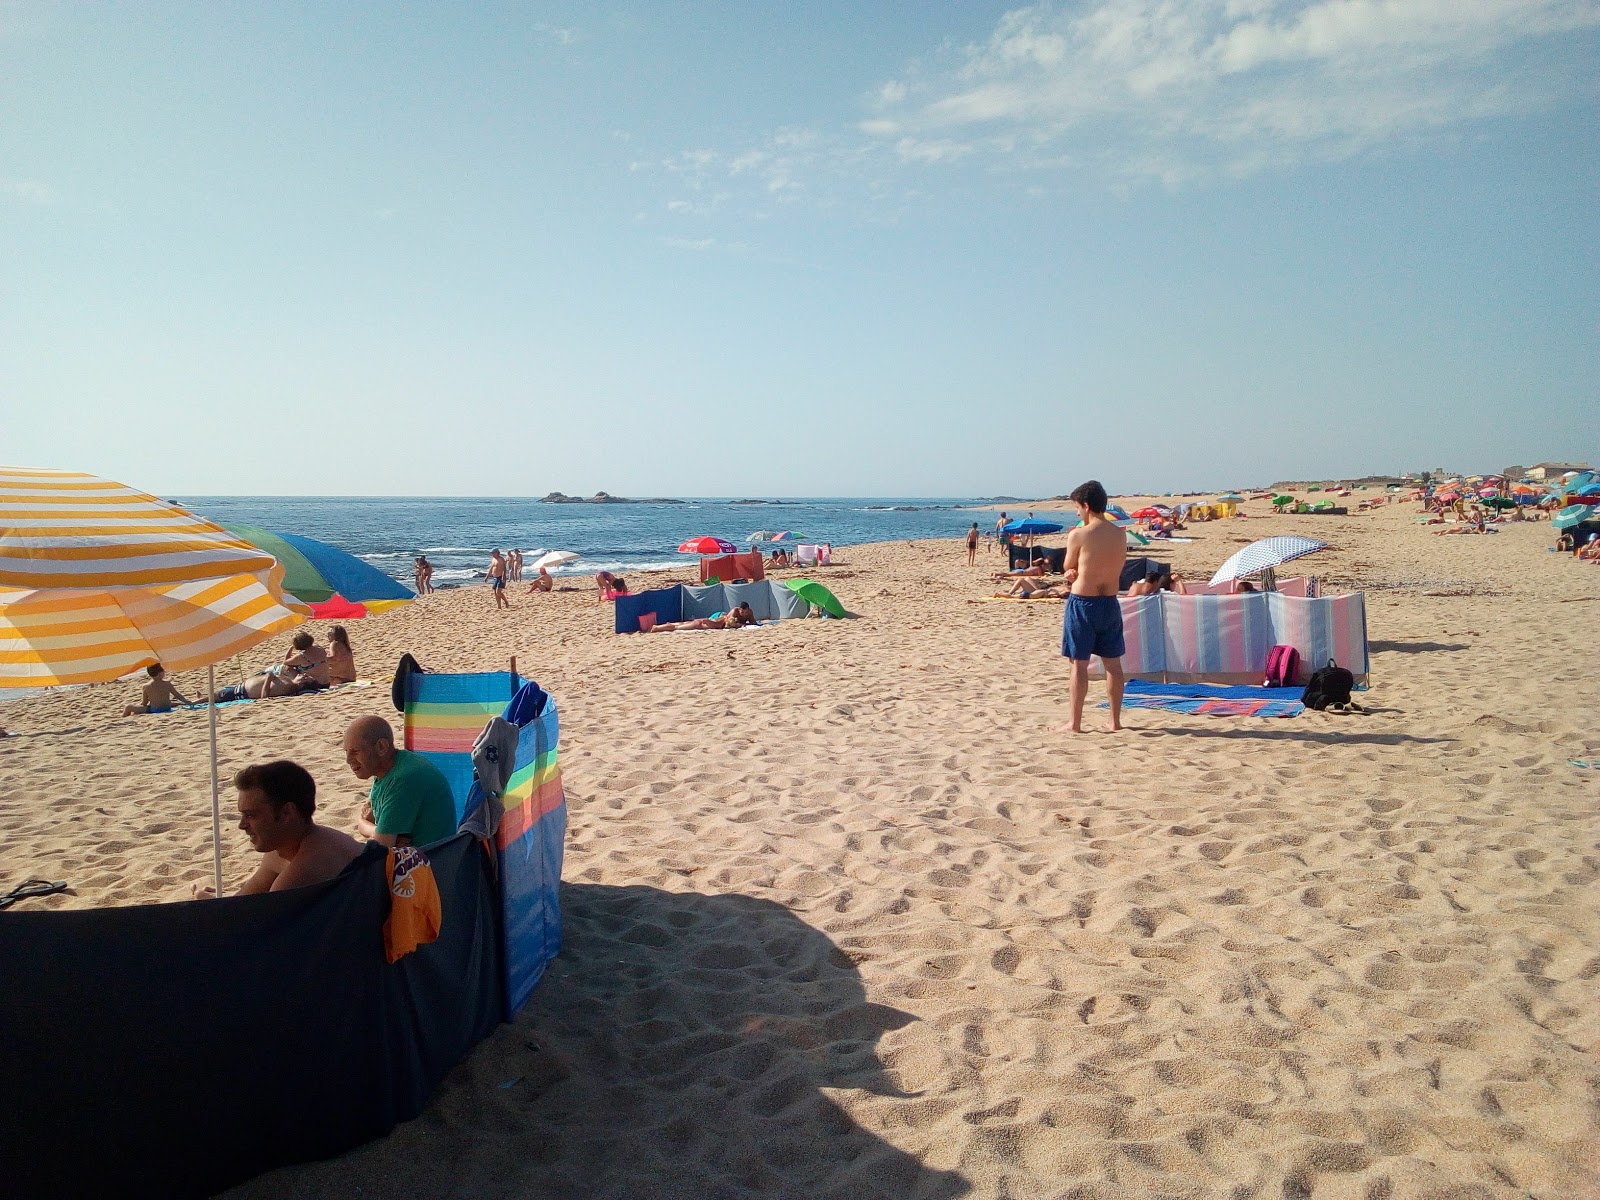 Praia da Memoria'in fotoğrafı geniş plaj ile birlikte